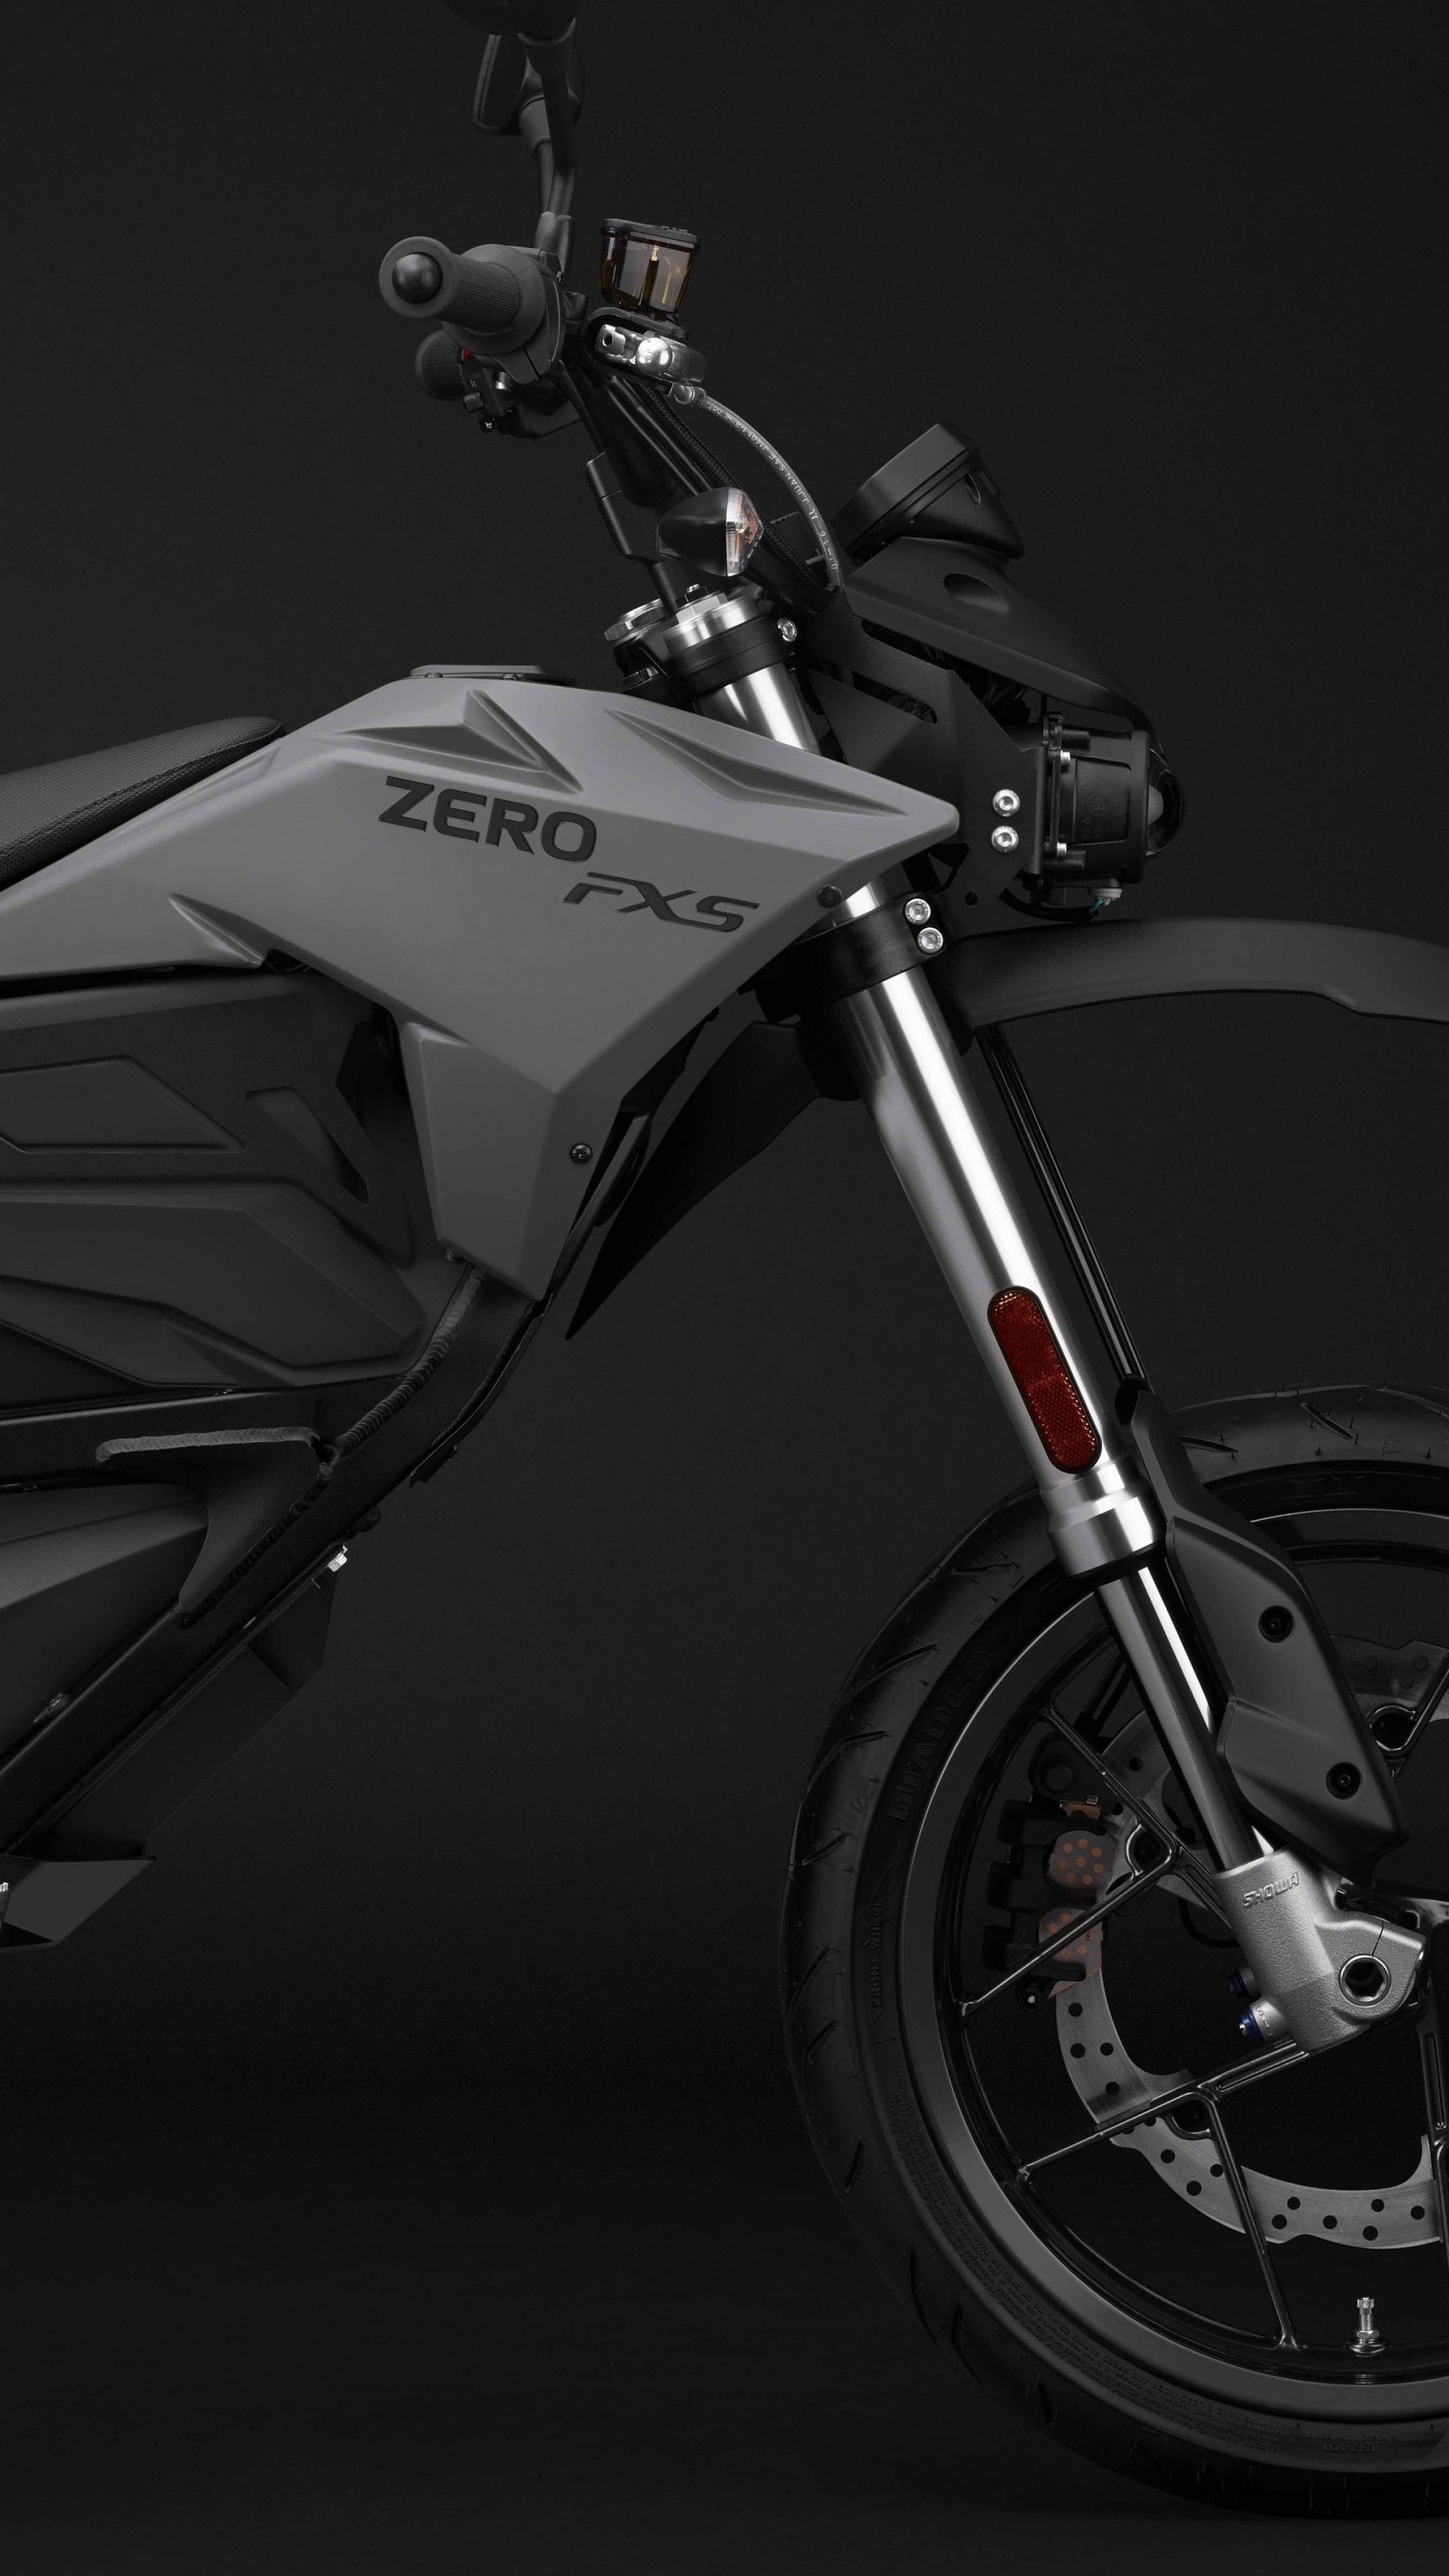 Zero Motorcycle, Auto industry, 2019 bikes, Electric bikes, 2160x3840 4K Phone